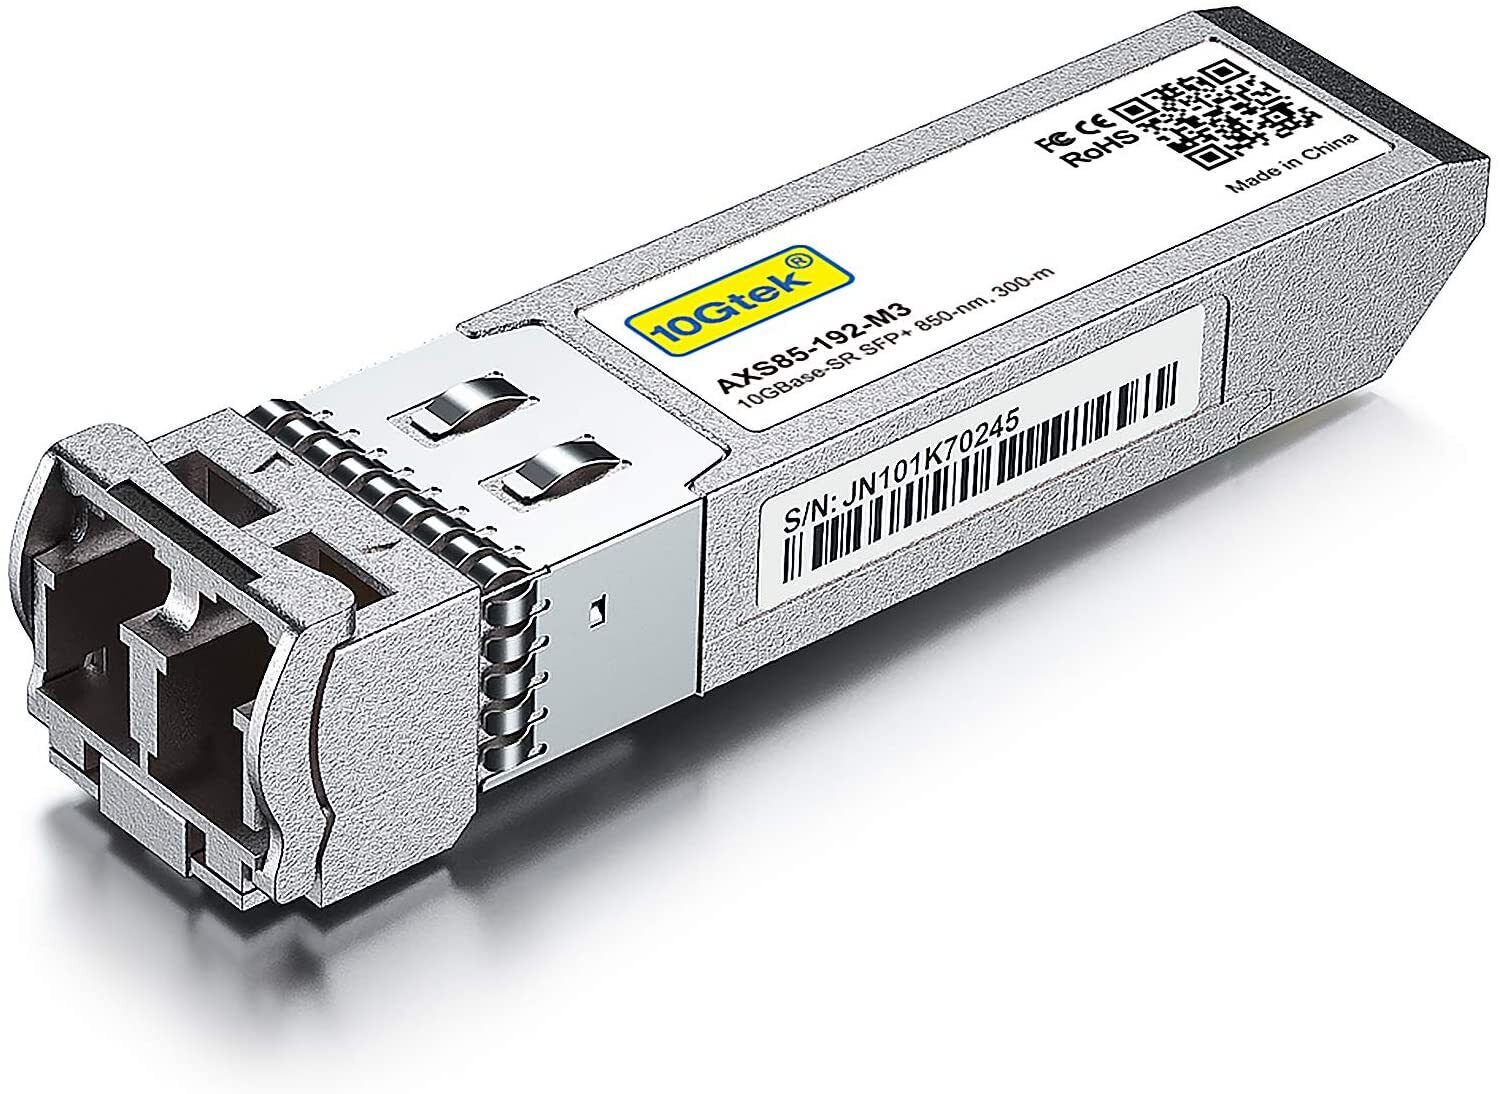 For Cisco SFP-10G-SR Transceiver 10GBASE-SR 10G SFP Module 850nm Multimode fiber